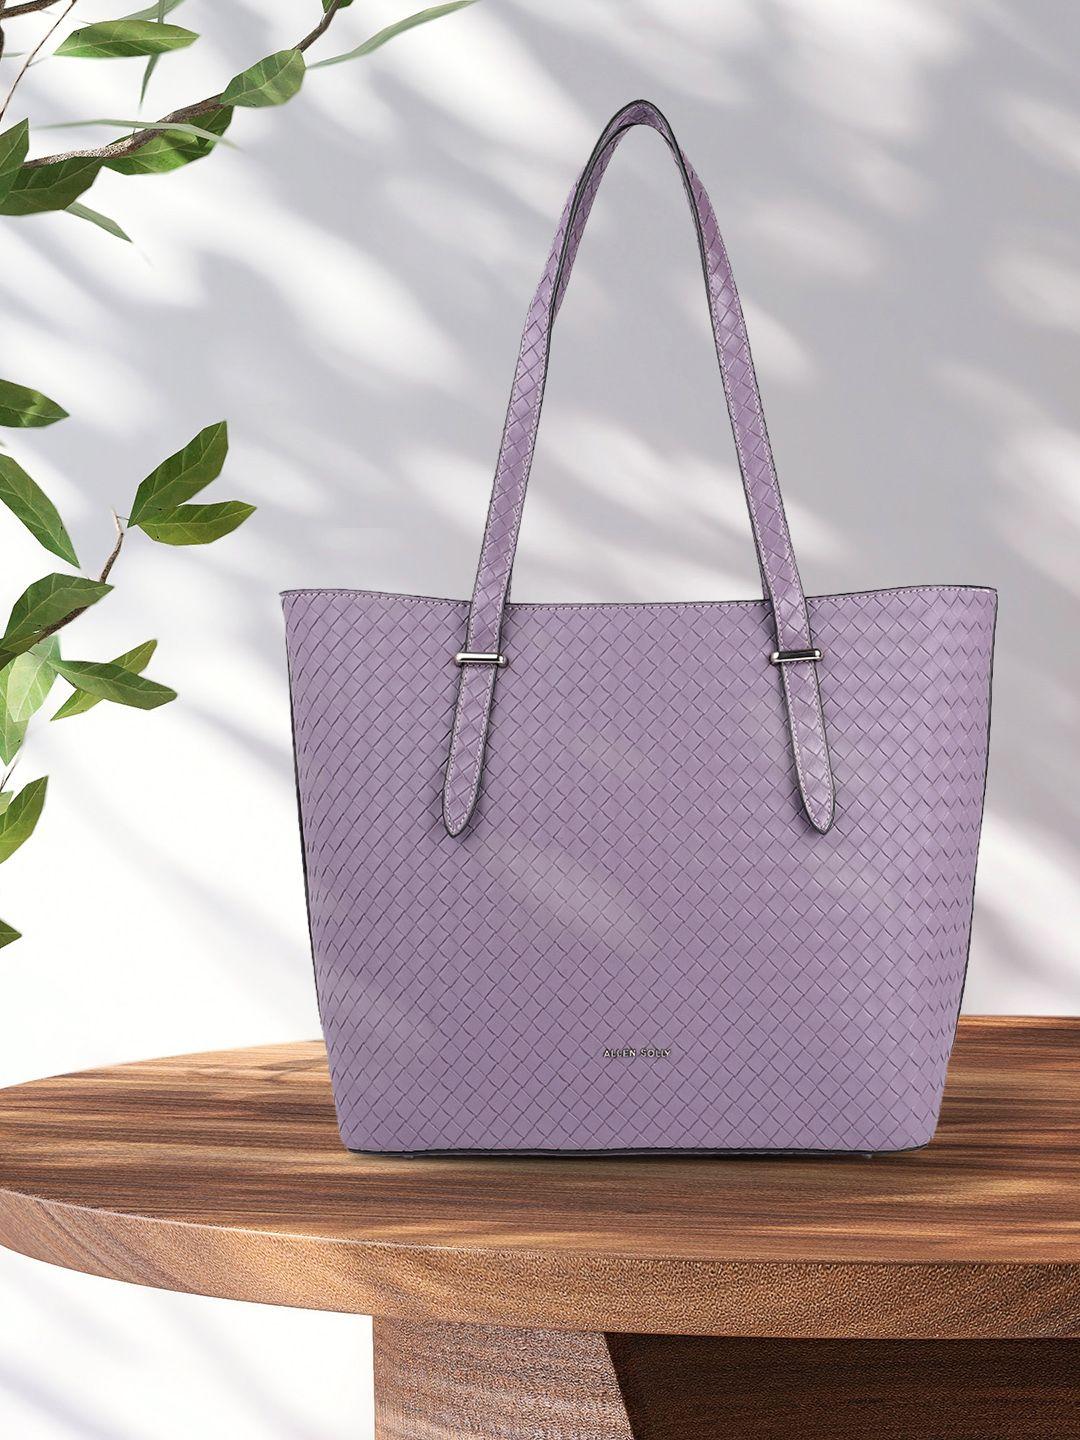 allen solly purple textured shoulder bag